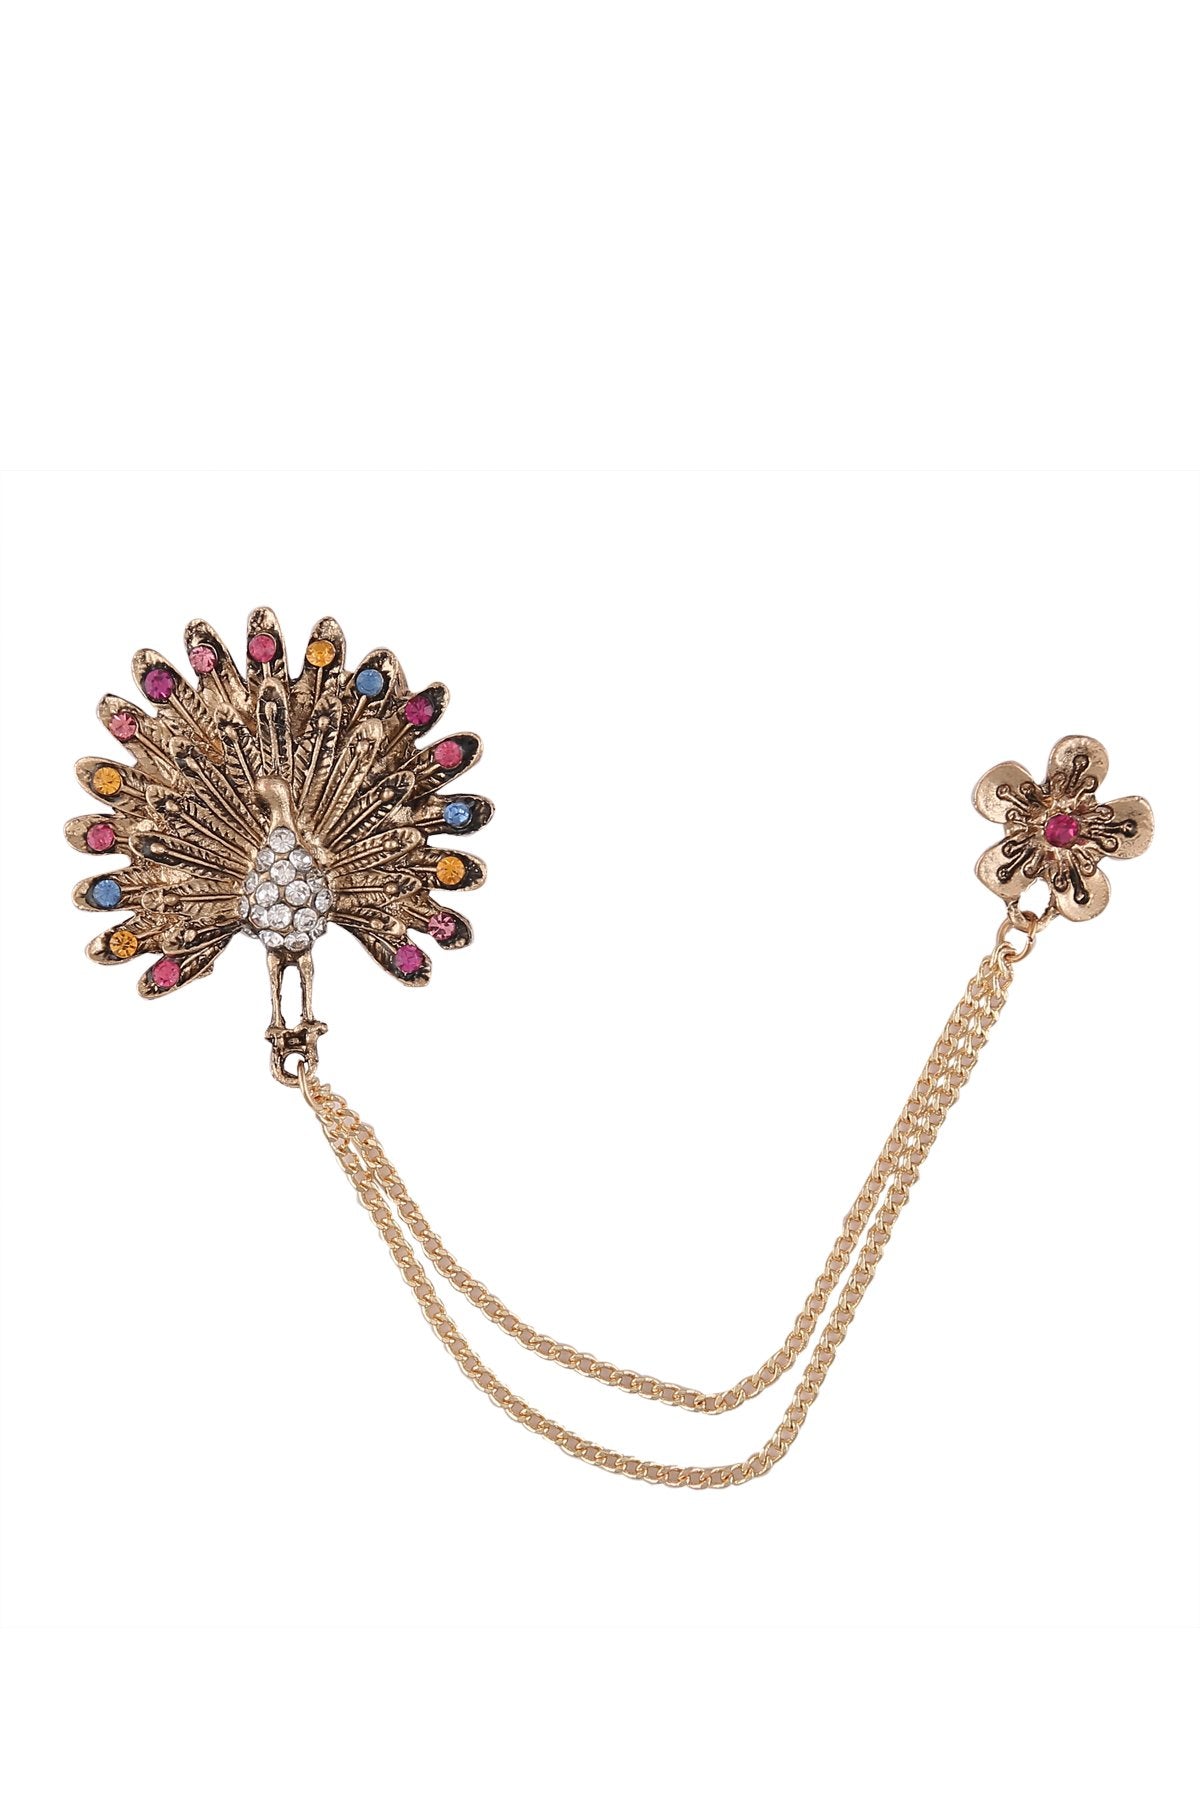 Antique Gold Decorative Multicolour Diamond Peacock Chain Brooch